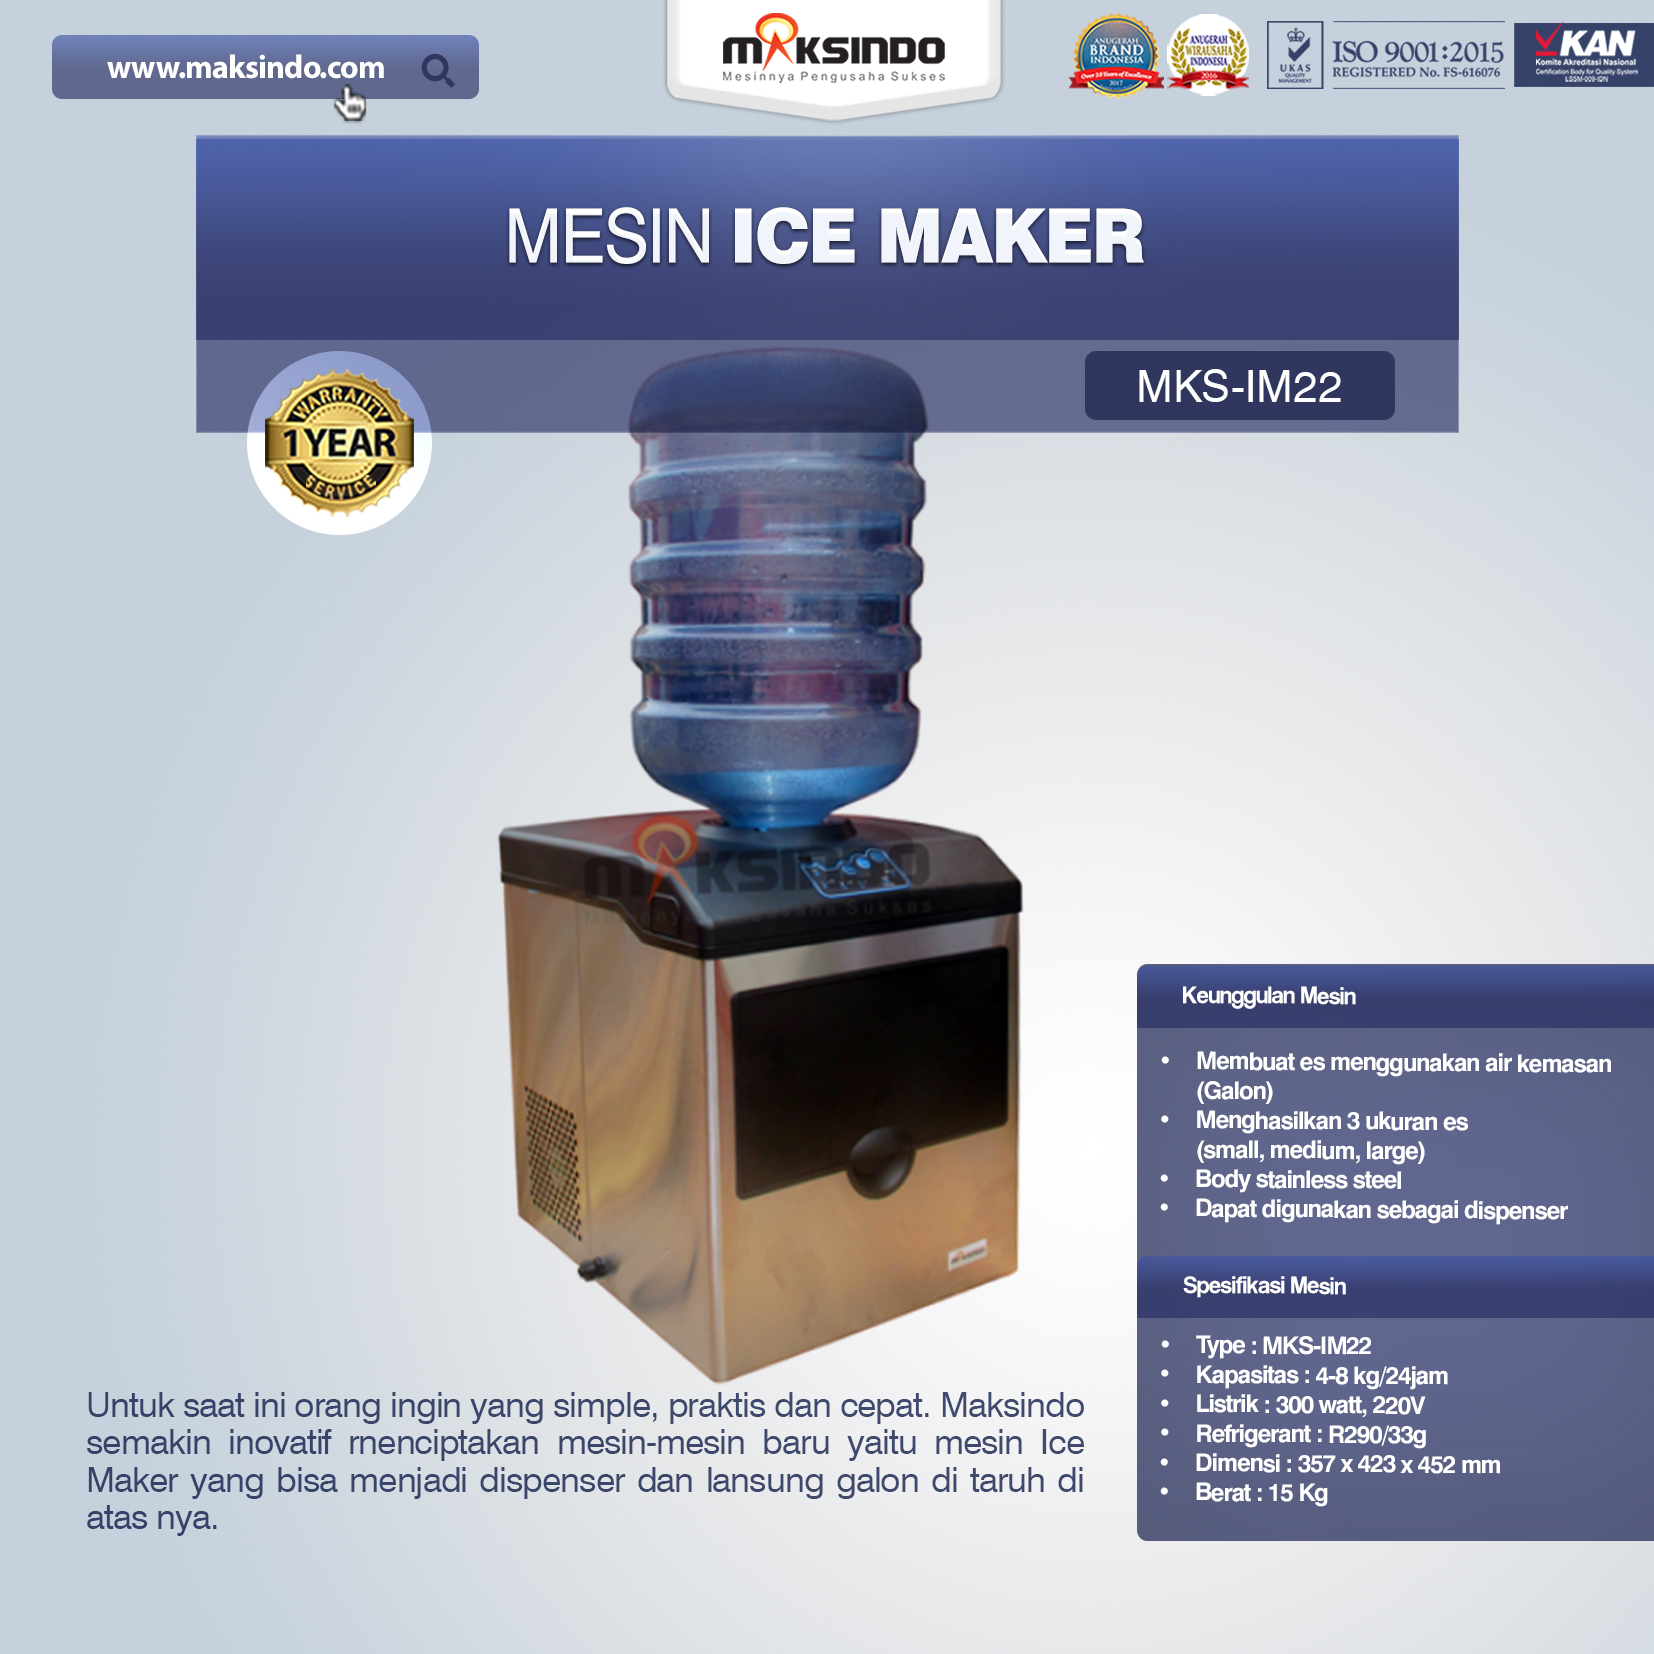 Jual Mesin Ice Maker MKS-IM22 di Bandung